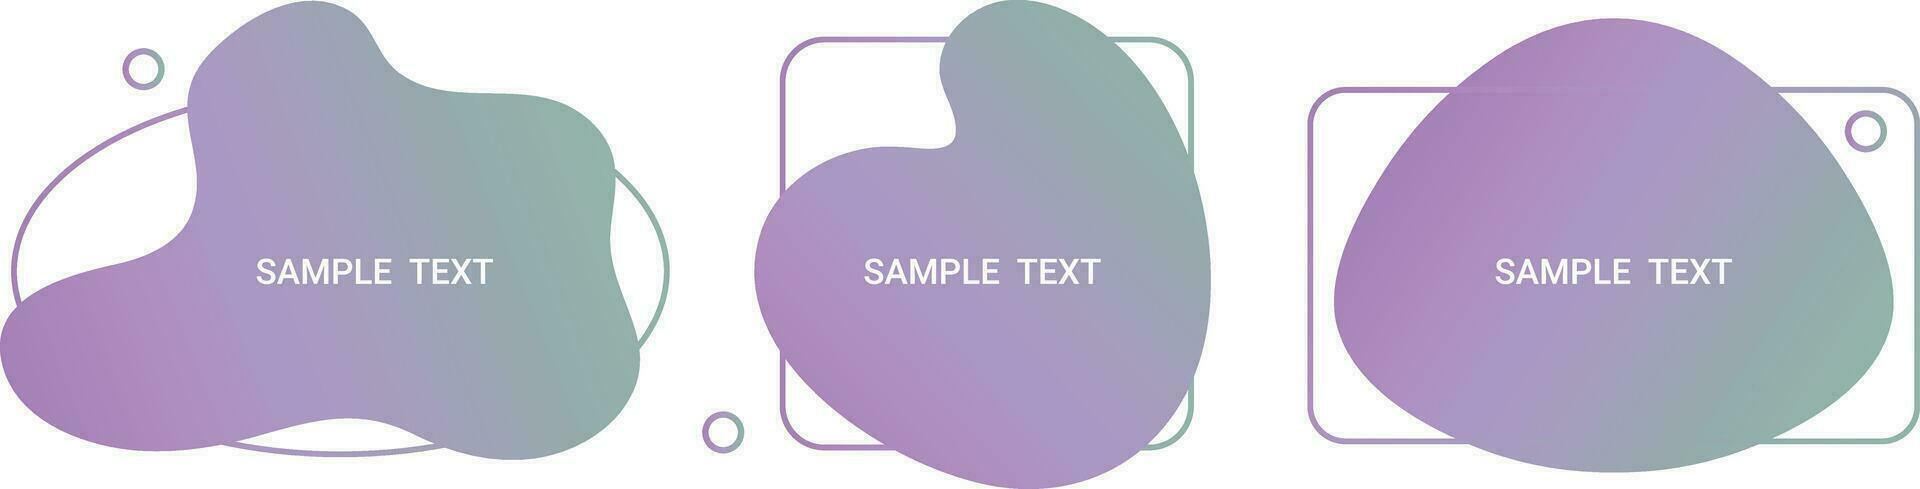 conjunto do ameba modelos para apresentação dentro gradiente cores. vários líquido formas com uma cópia de espaço para texto. vetor ilustração